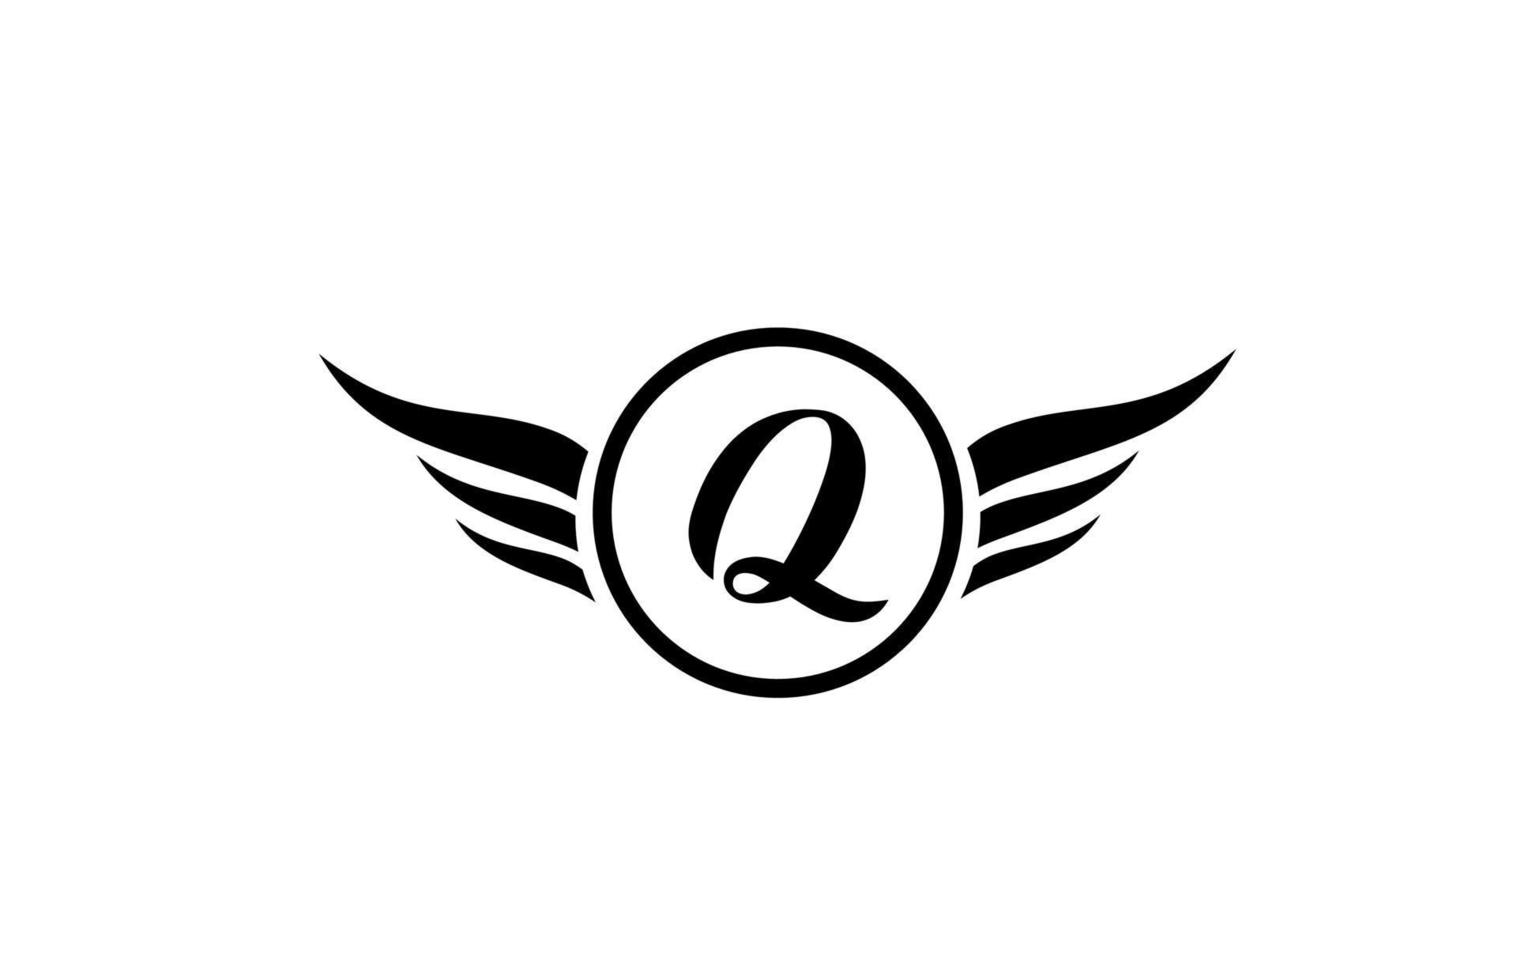 zwart-wit q vleugel vleugels alfabet letterpictogram logo met cirkel voor bedrijf ontwerp en business vector